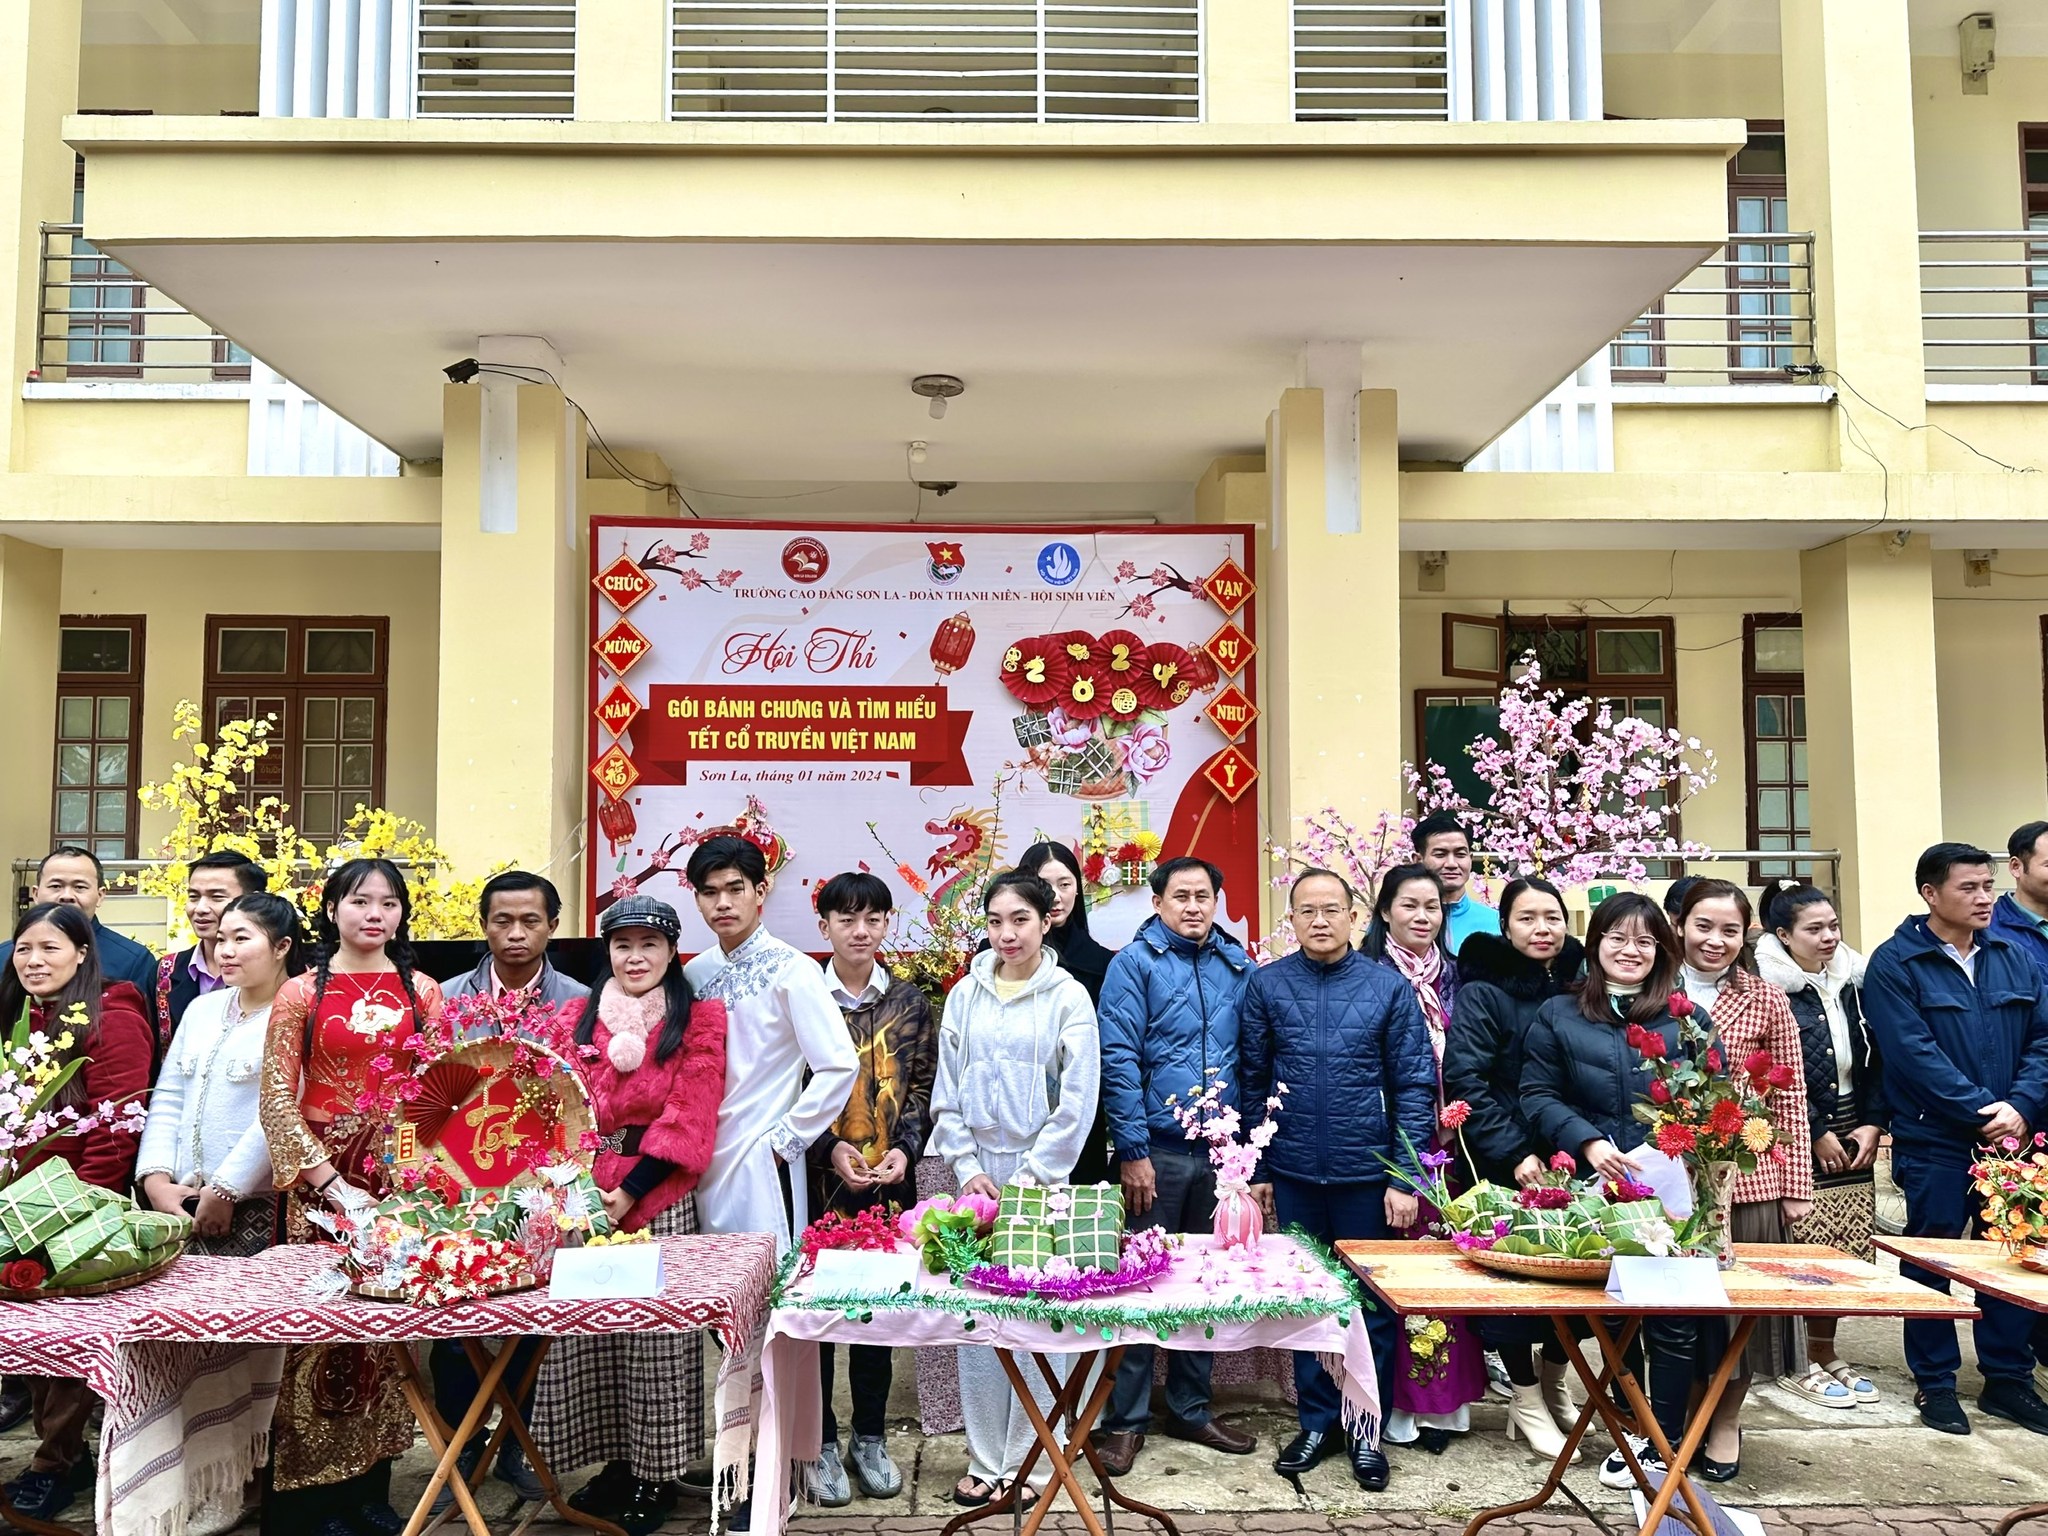 Trường cao đẳng Sơn La tổ chức thi gói bánh chưng